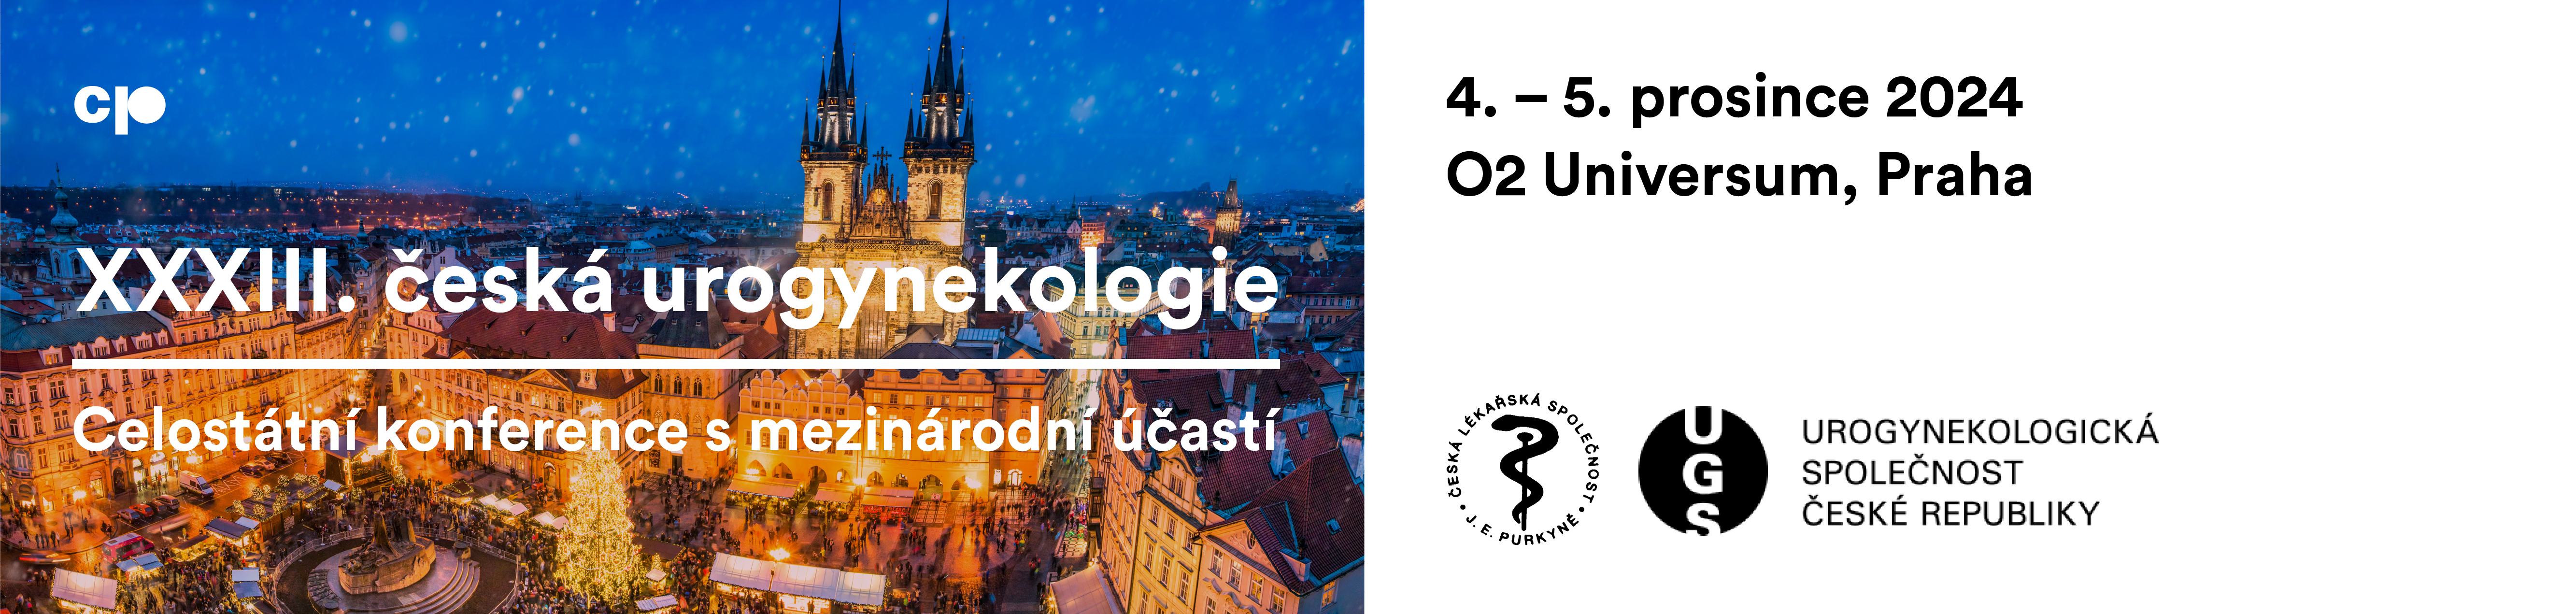 XXXIII. česká urogynekologie